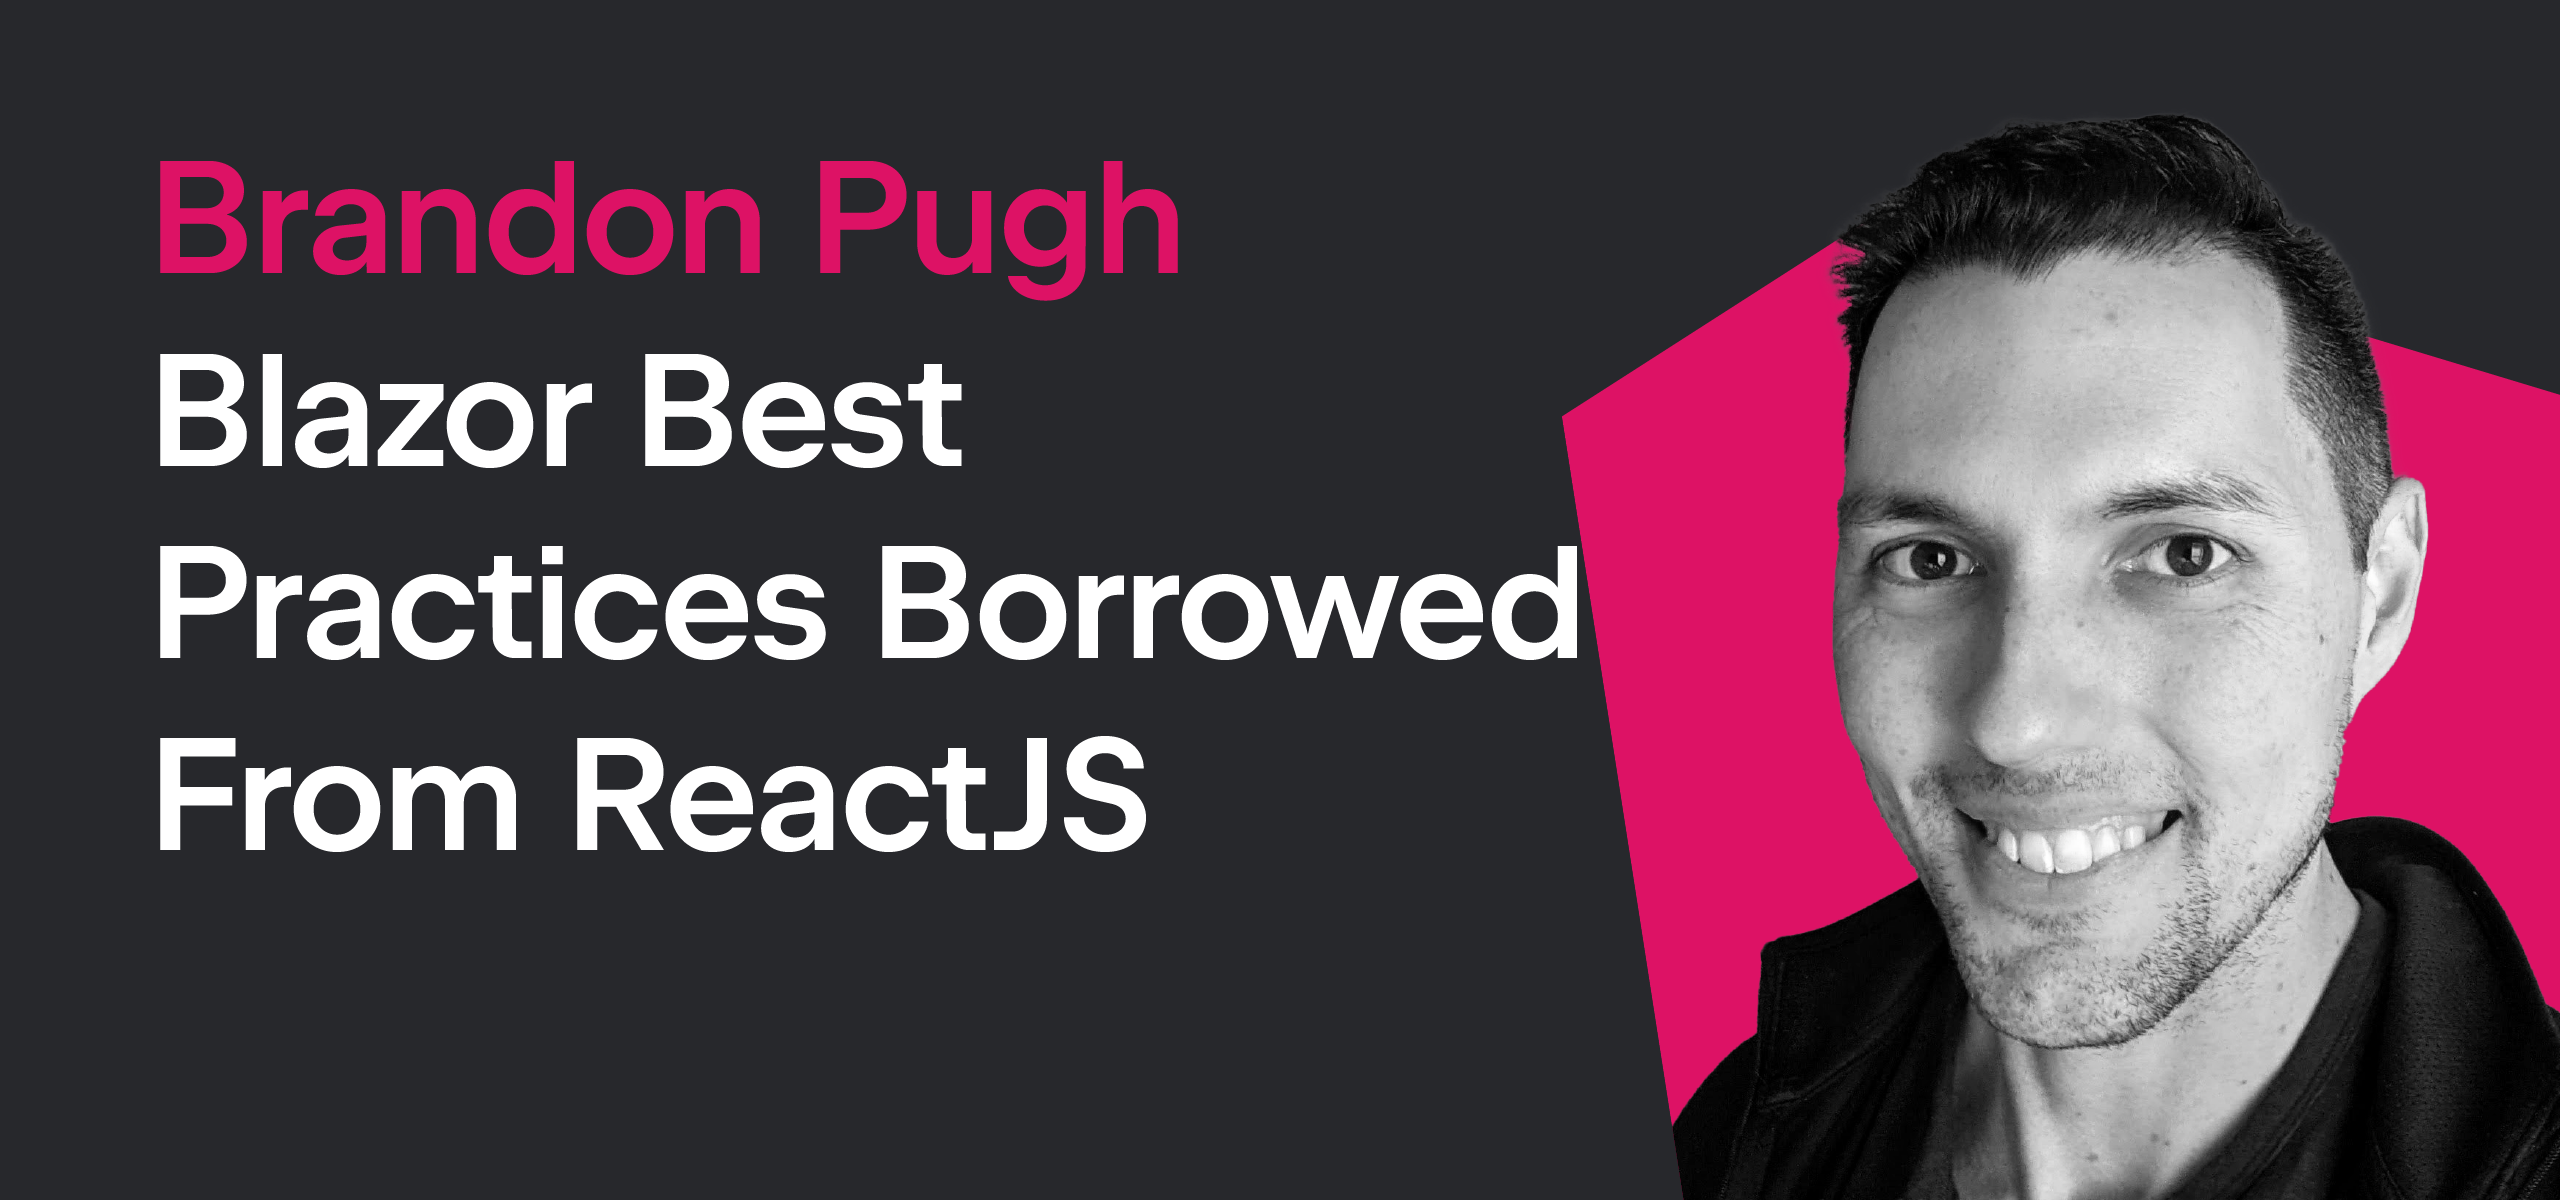 Brandon Pugh - Blazor Best Practices From ReactJs